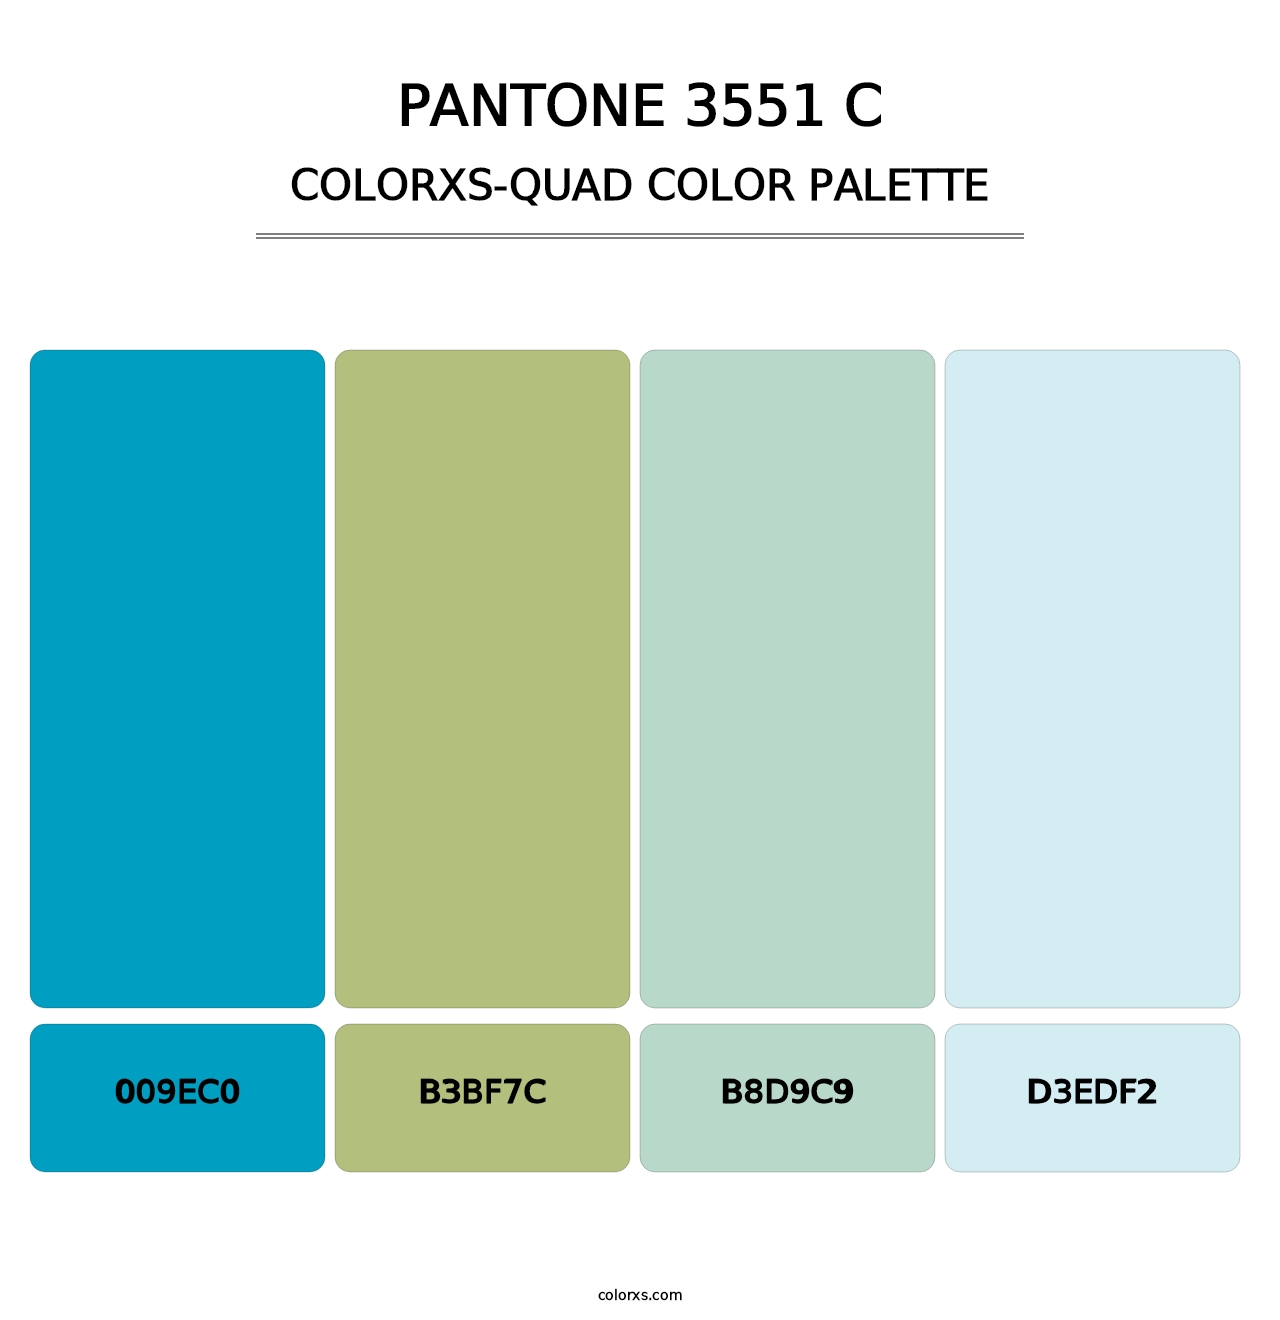 PANTONE 3551 C - Colorxs Quad Palette